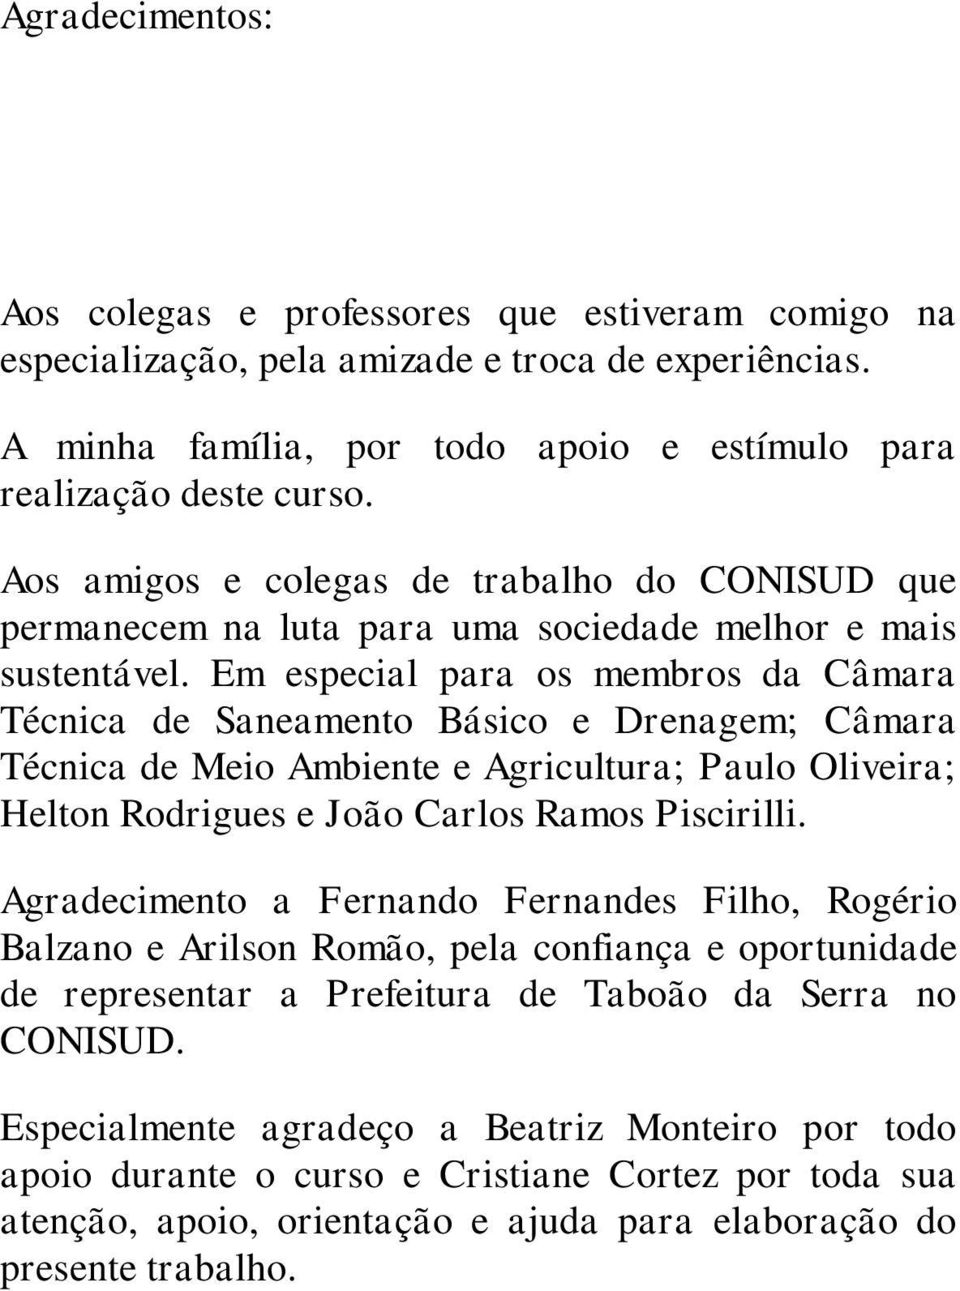 Em especial para os membros da Câmara Técnica de Saneamento Básico e Drenagem; Câmara Técnica de Meio Ambiente e Agricultura; Paulo Oliveira; Helton Rodrigues e João Carlos Ramos Piscirilli.